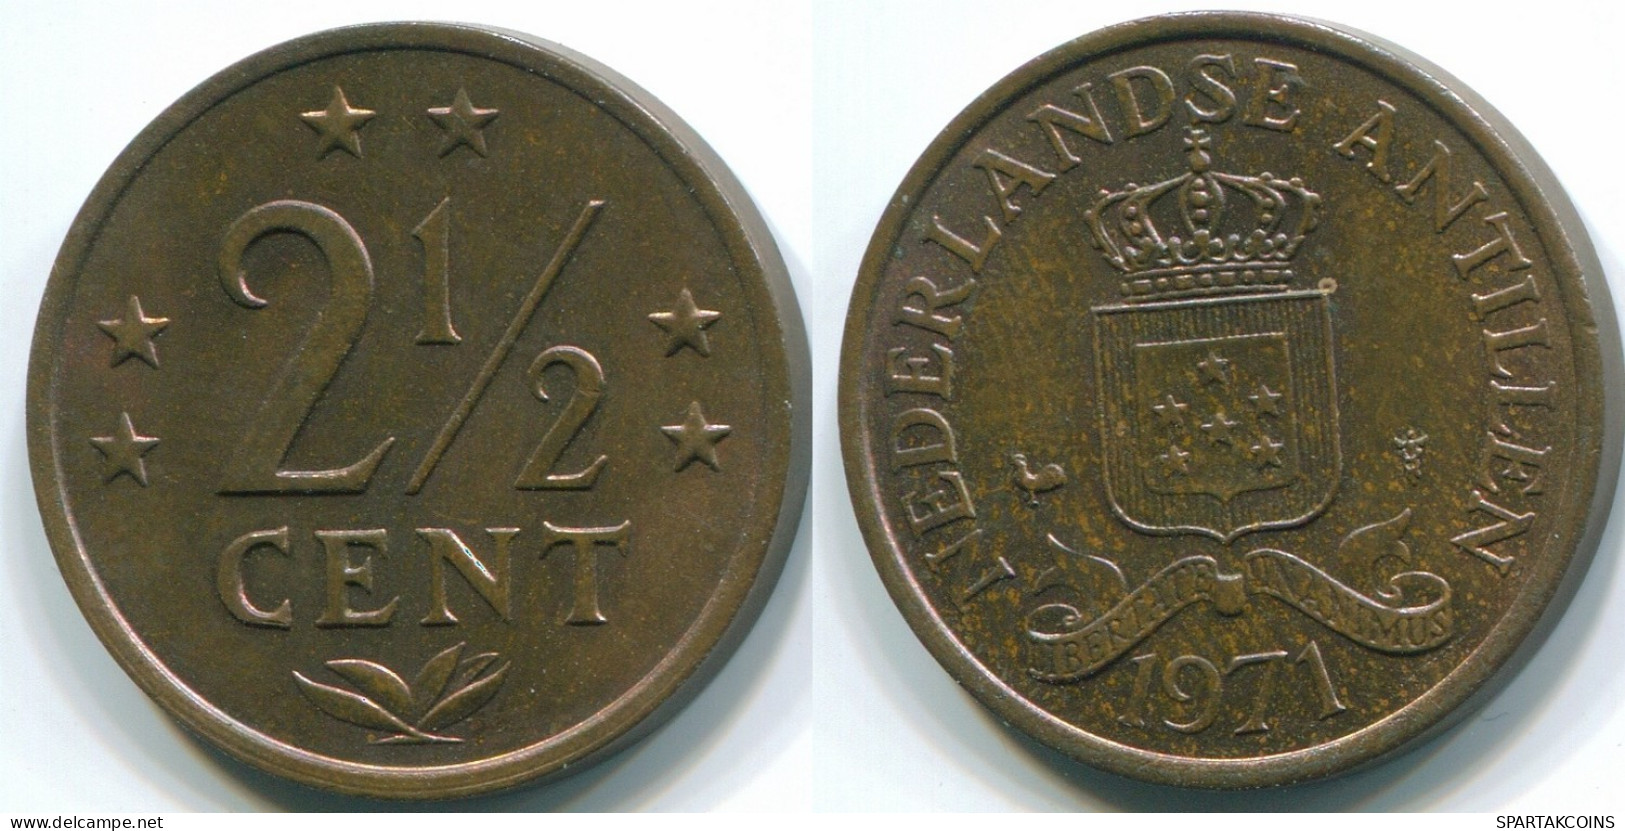 2 1/2 CENT 1971 NIEDERLÄNDISCHE ANTILLEN Bronze Koloniale Münze #S10496.D.A - Niederländische Antillen